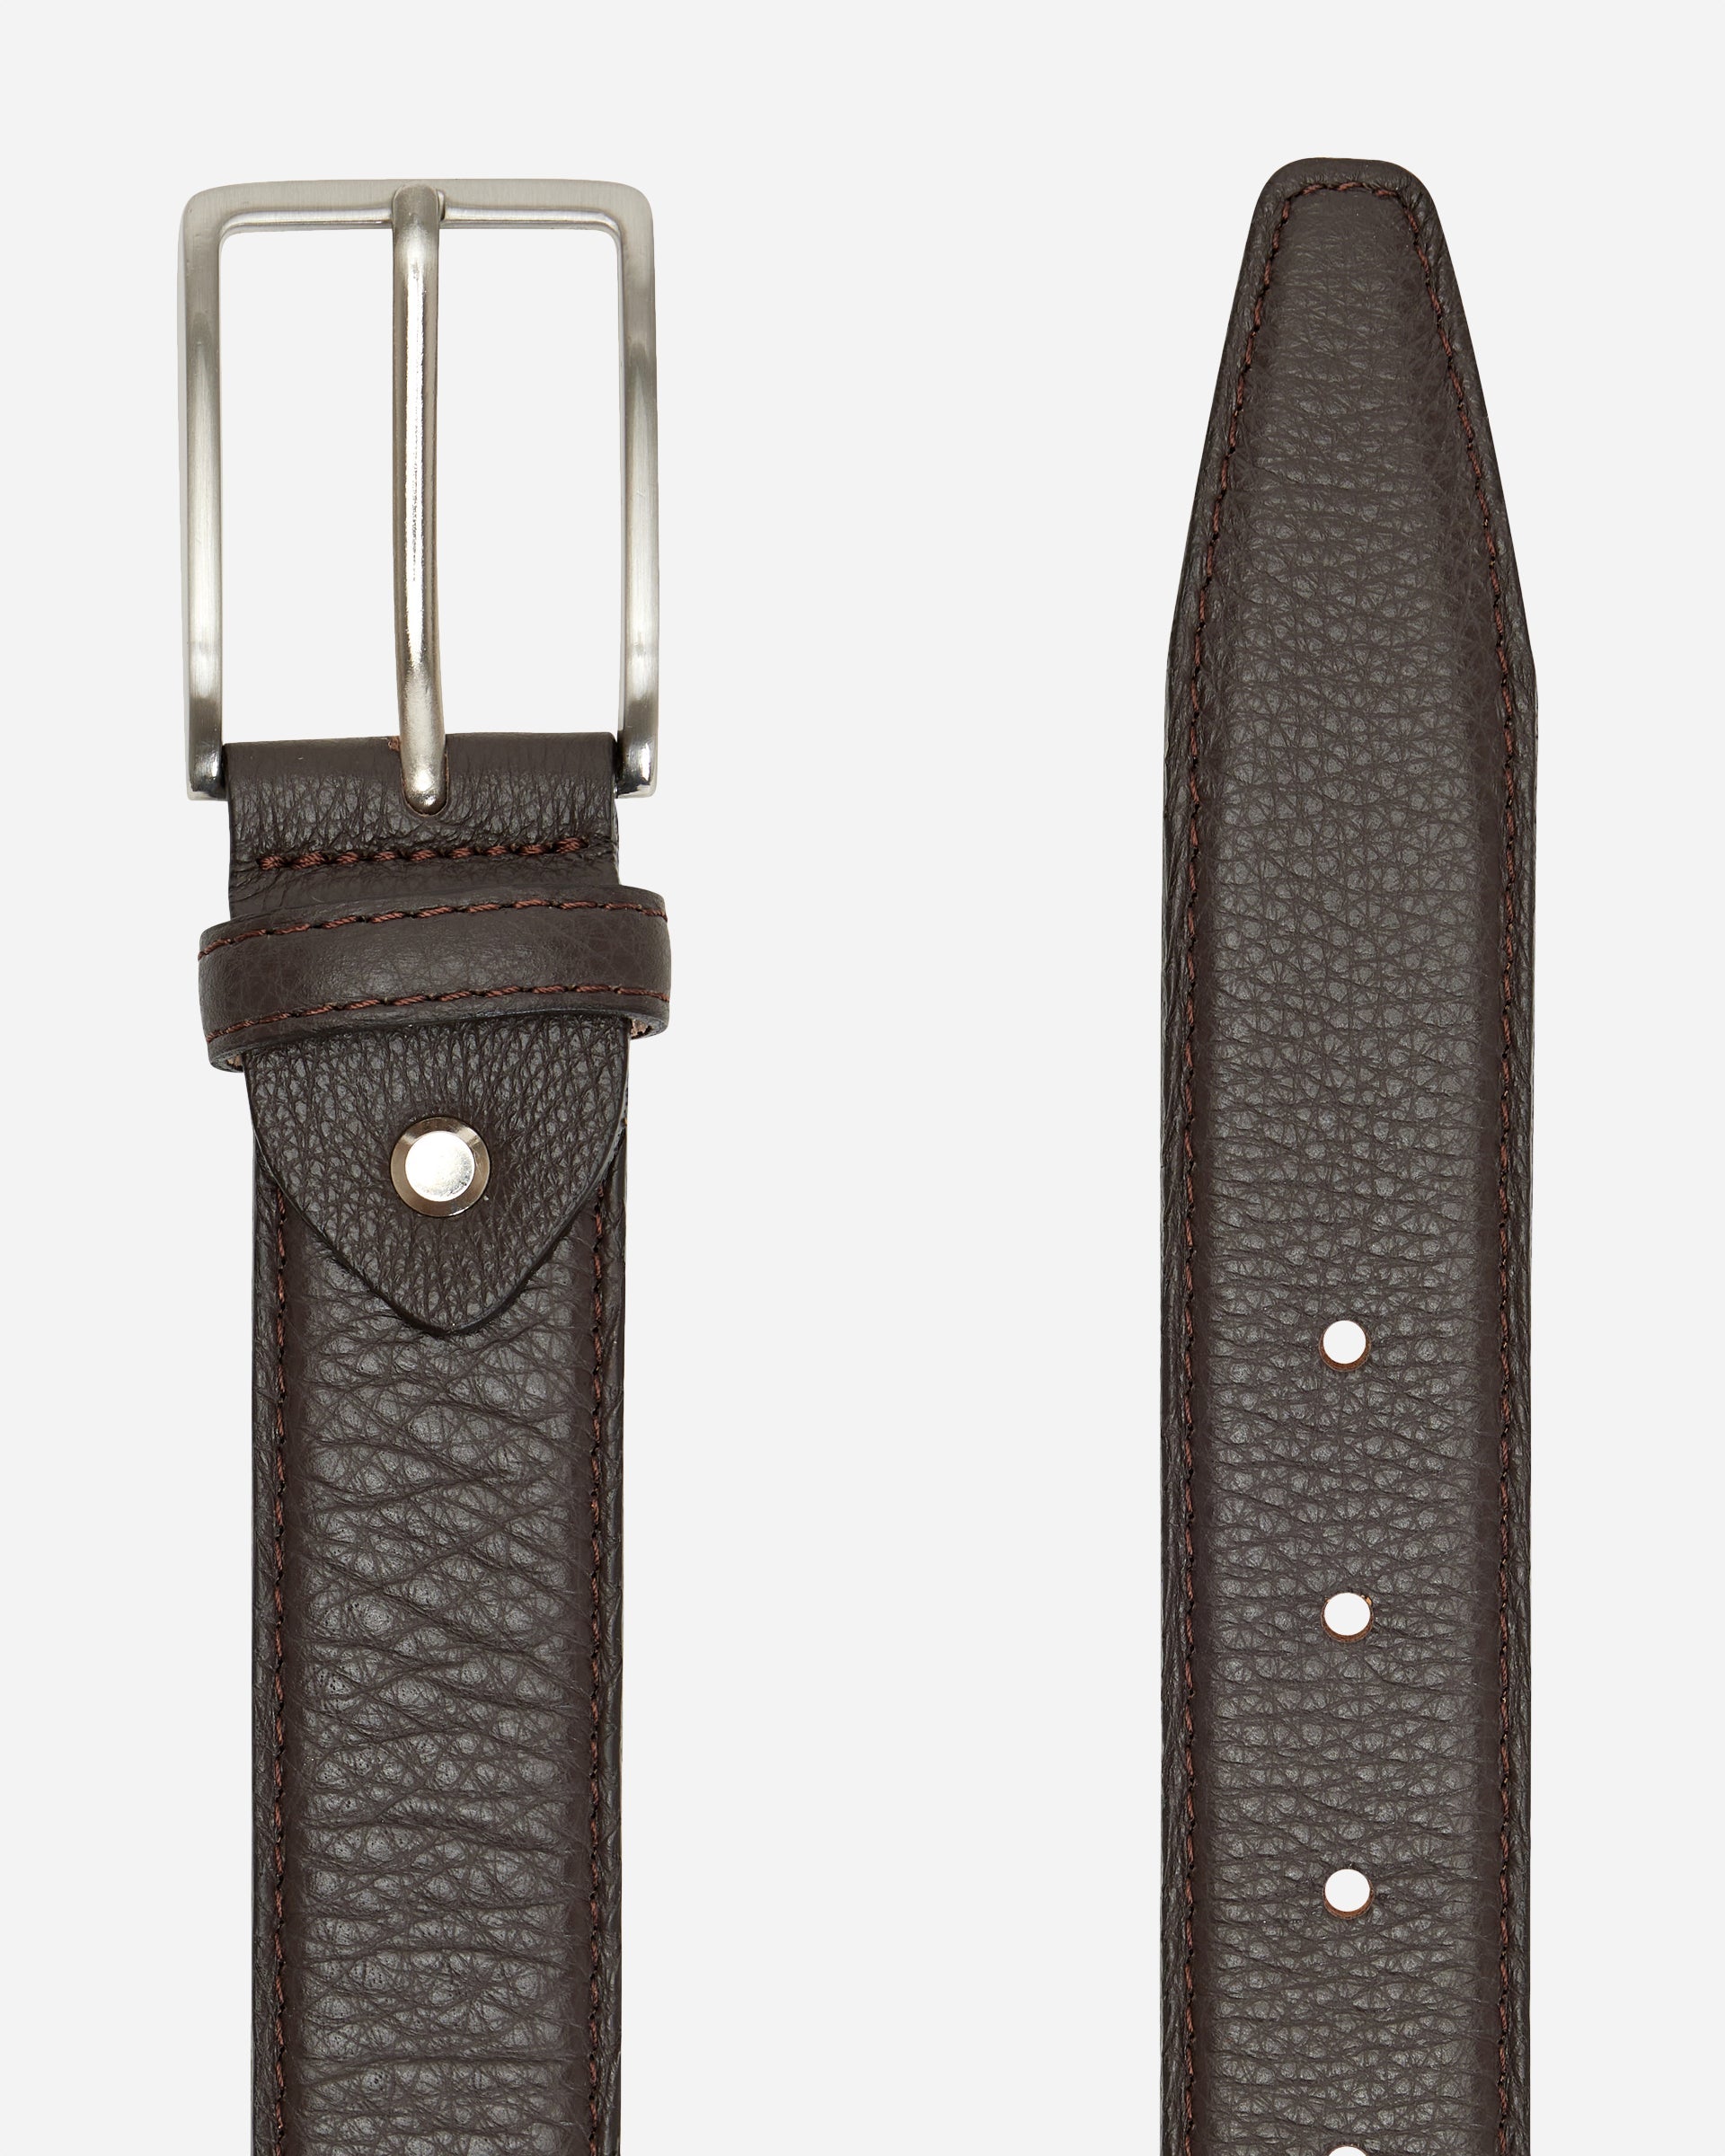 Penfold Belt - Men's Leather Belts at Menzclub